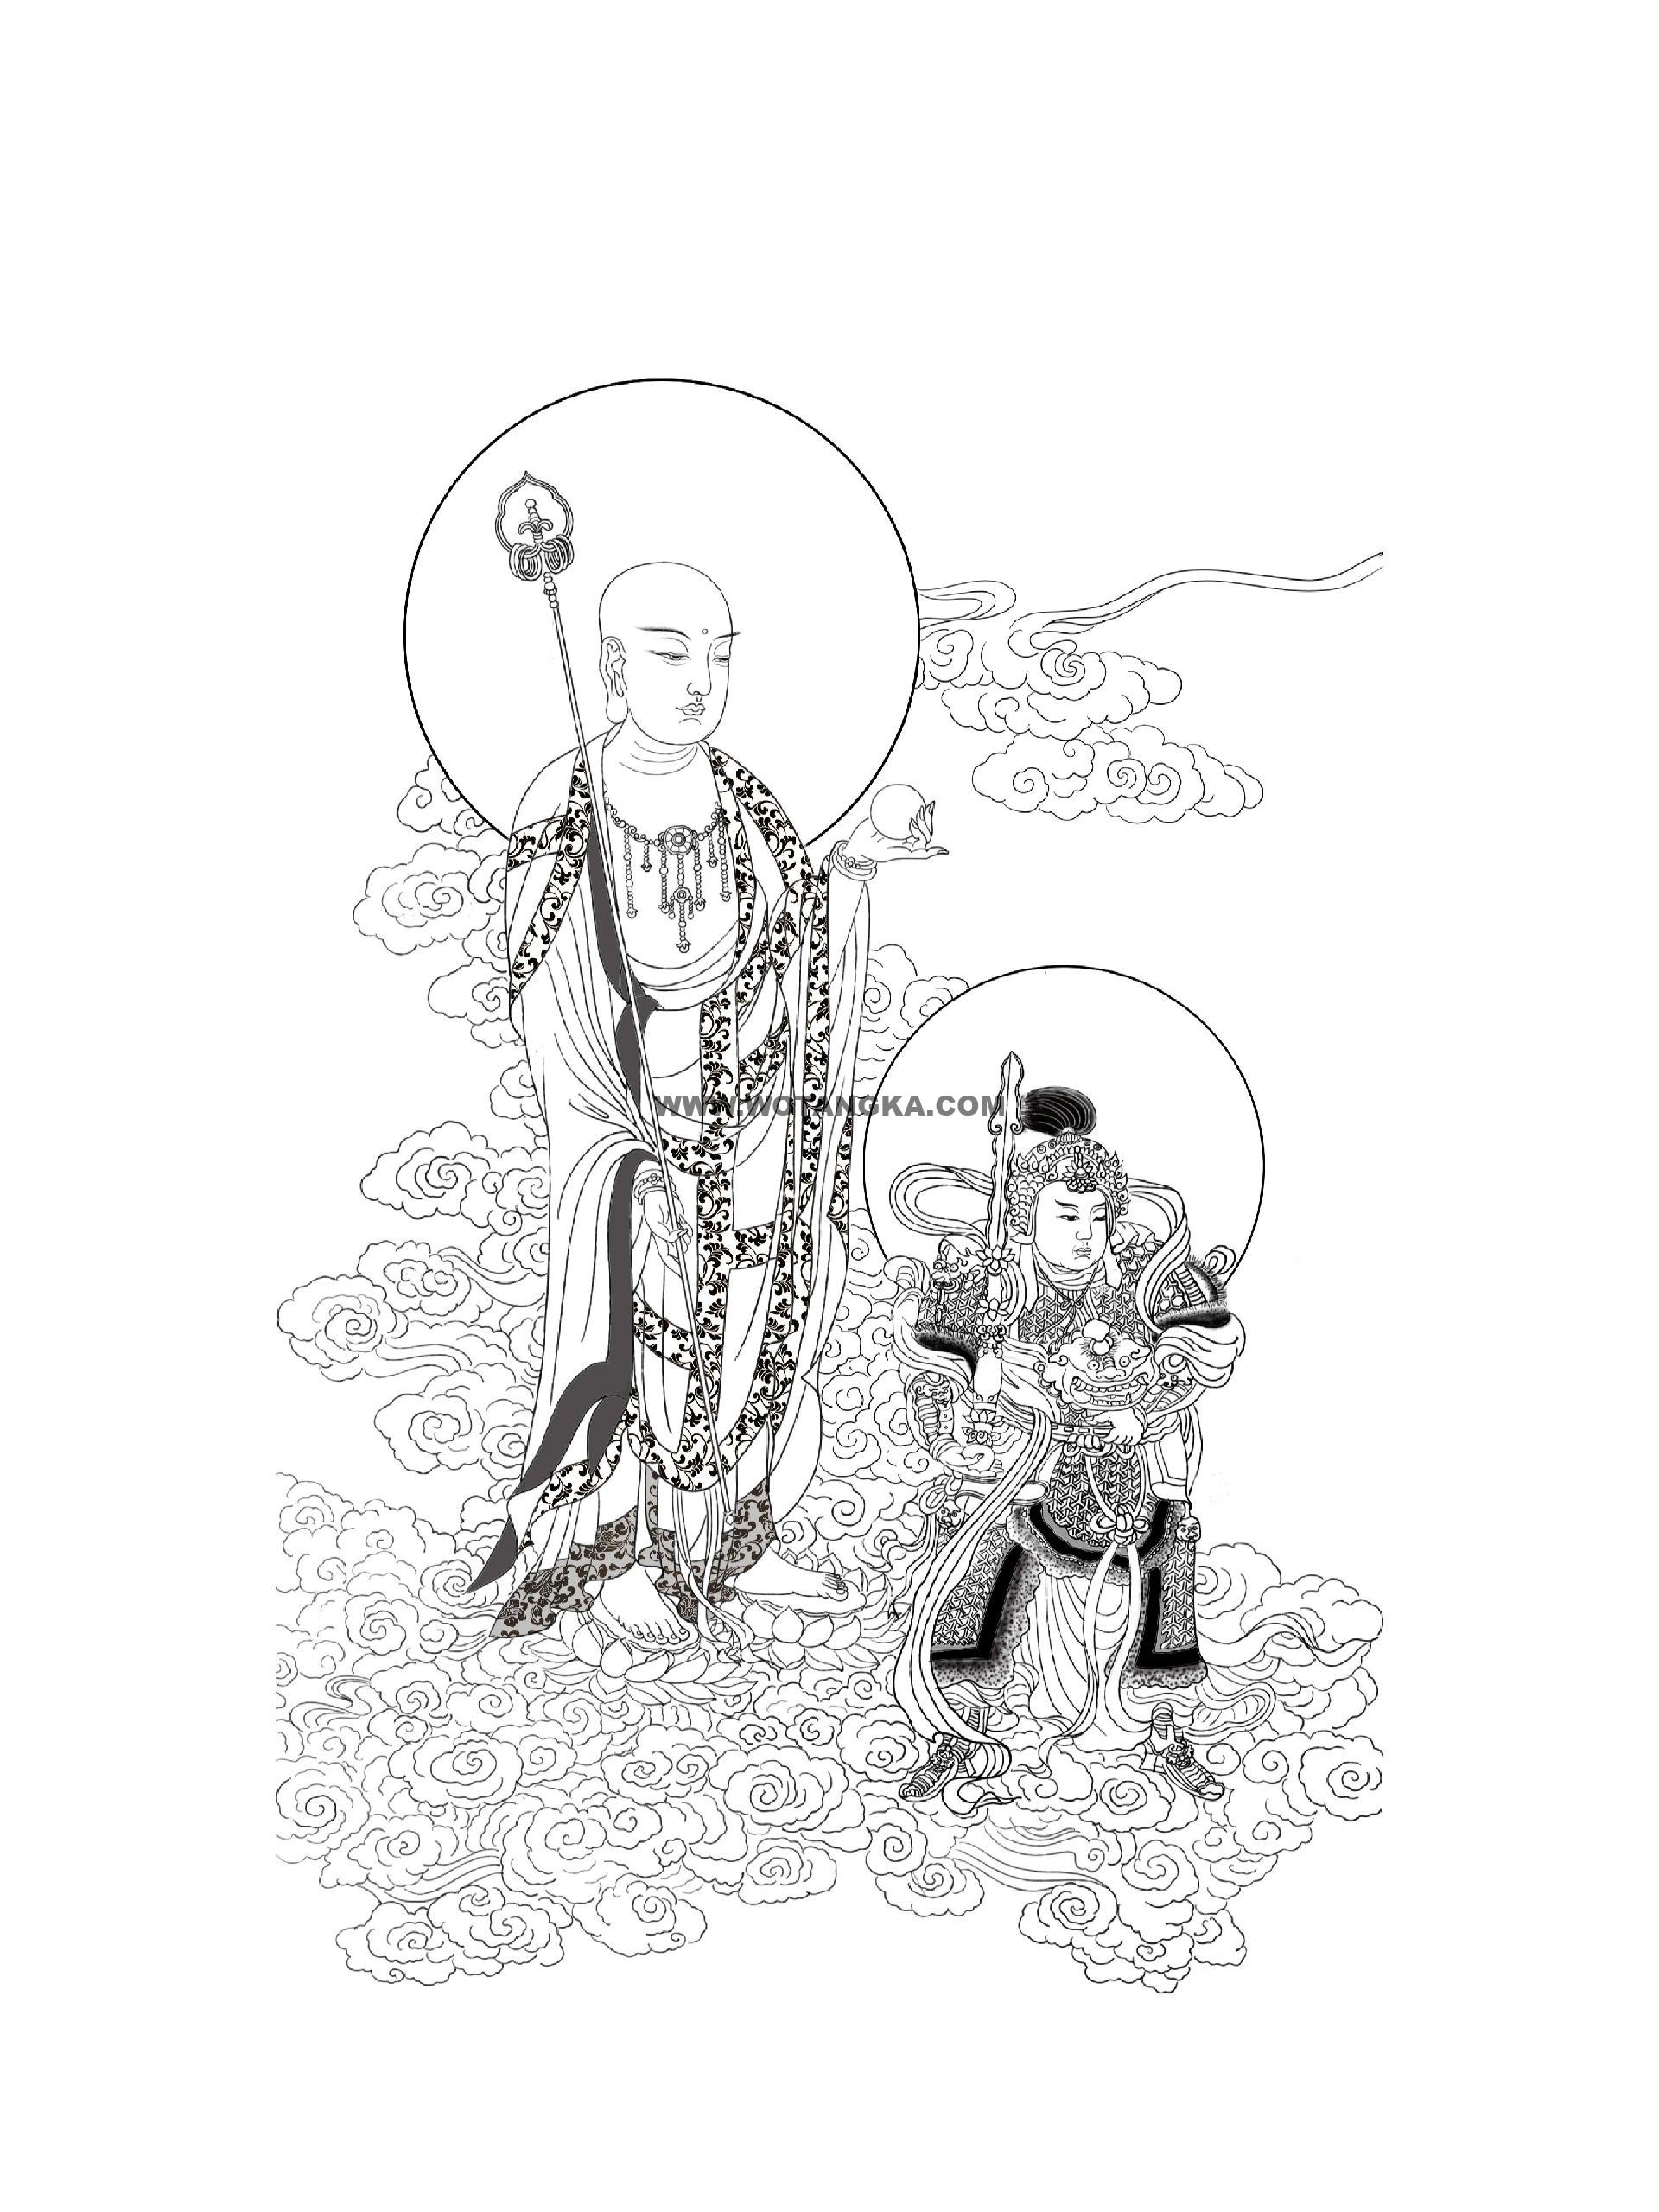 沃唐卡-唐卡白描线稿编号RD30857：地藏王菩萨与韦陀菩萨